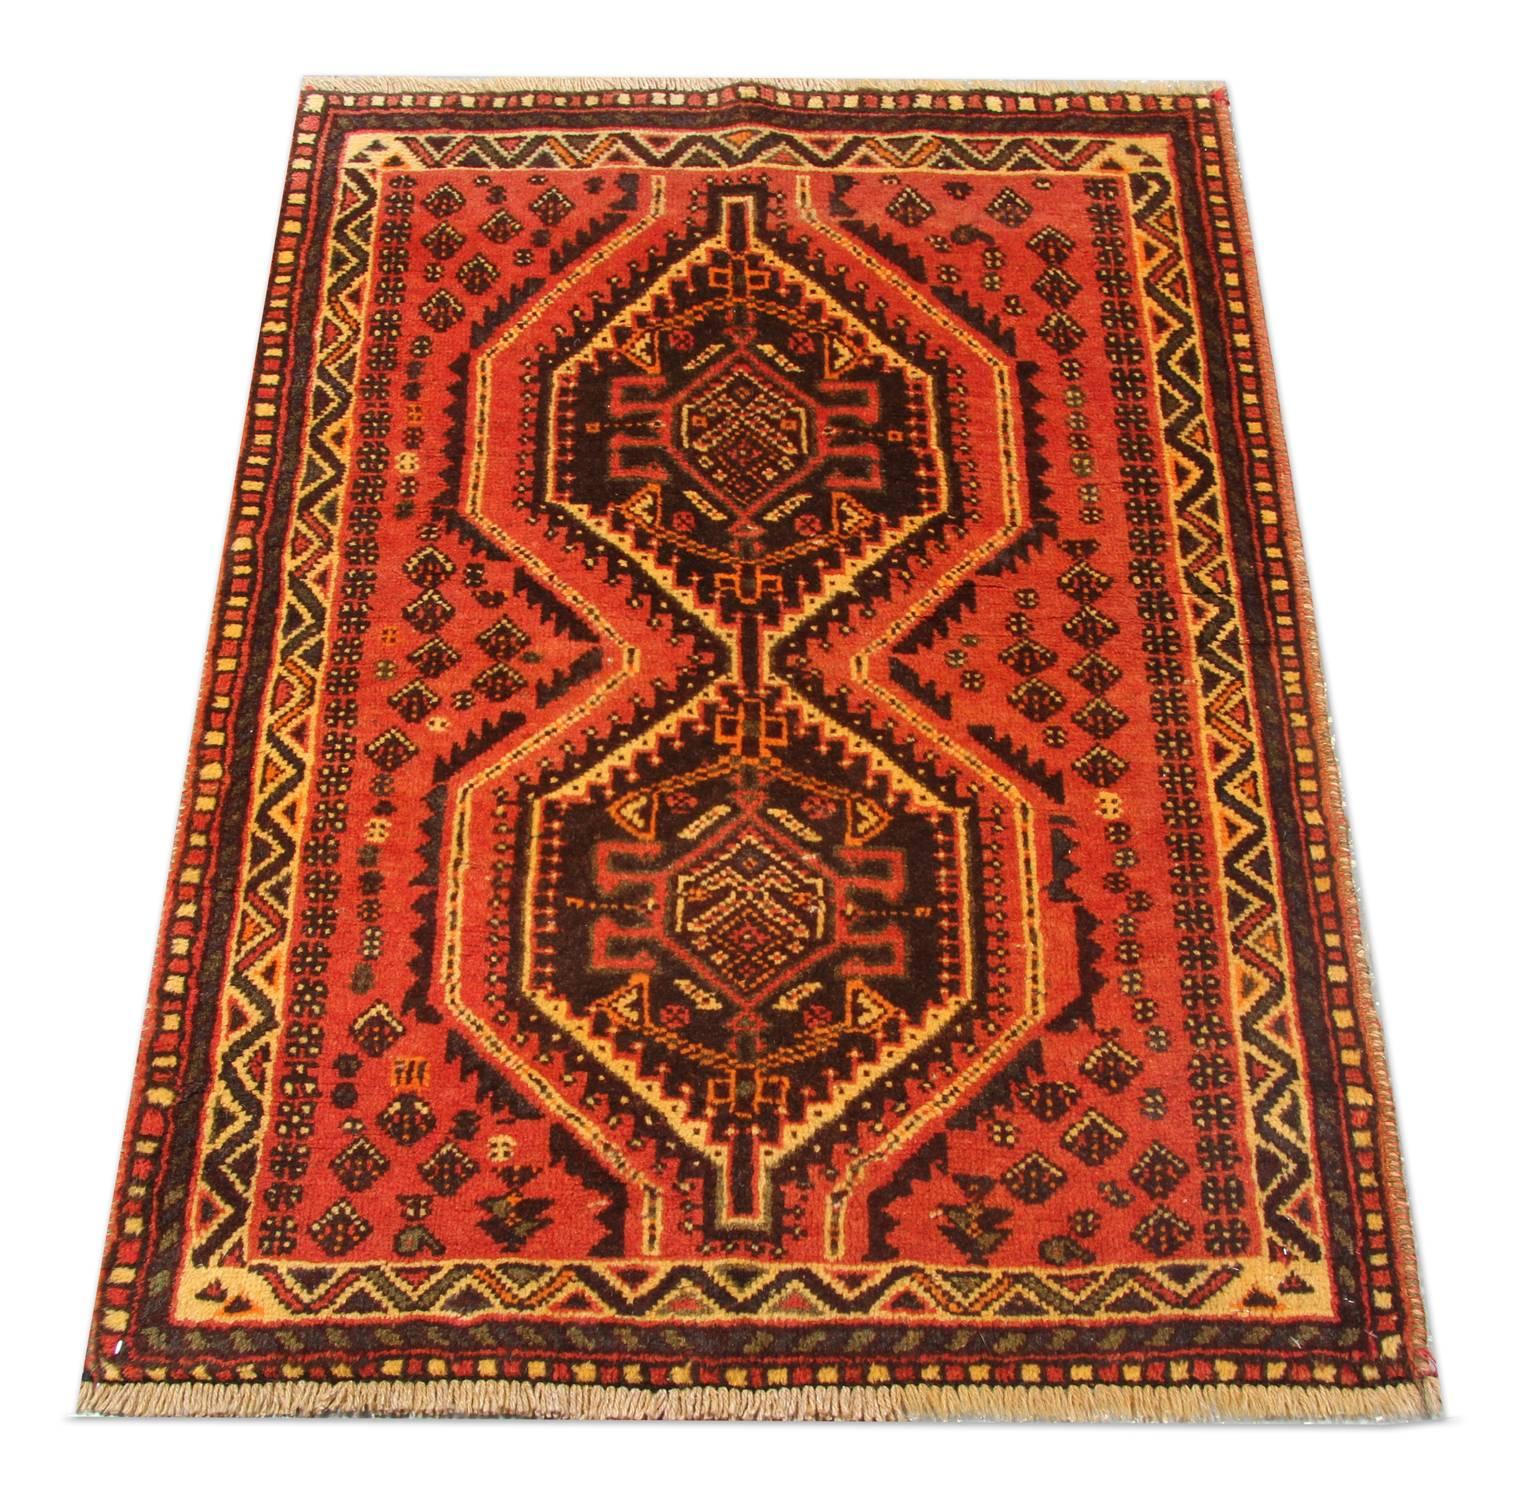 Dieser Tribal-Teppich wurde in der Türkei von Hand gewebt und zeigt ein fantastisches Tribal-Muster. Zwei Medaillons schmücken das zentrale Muster, das in braunen, blauen, orangefarbenen und cremefarbenen Akzenten auf einem satten roten Hintergrund